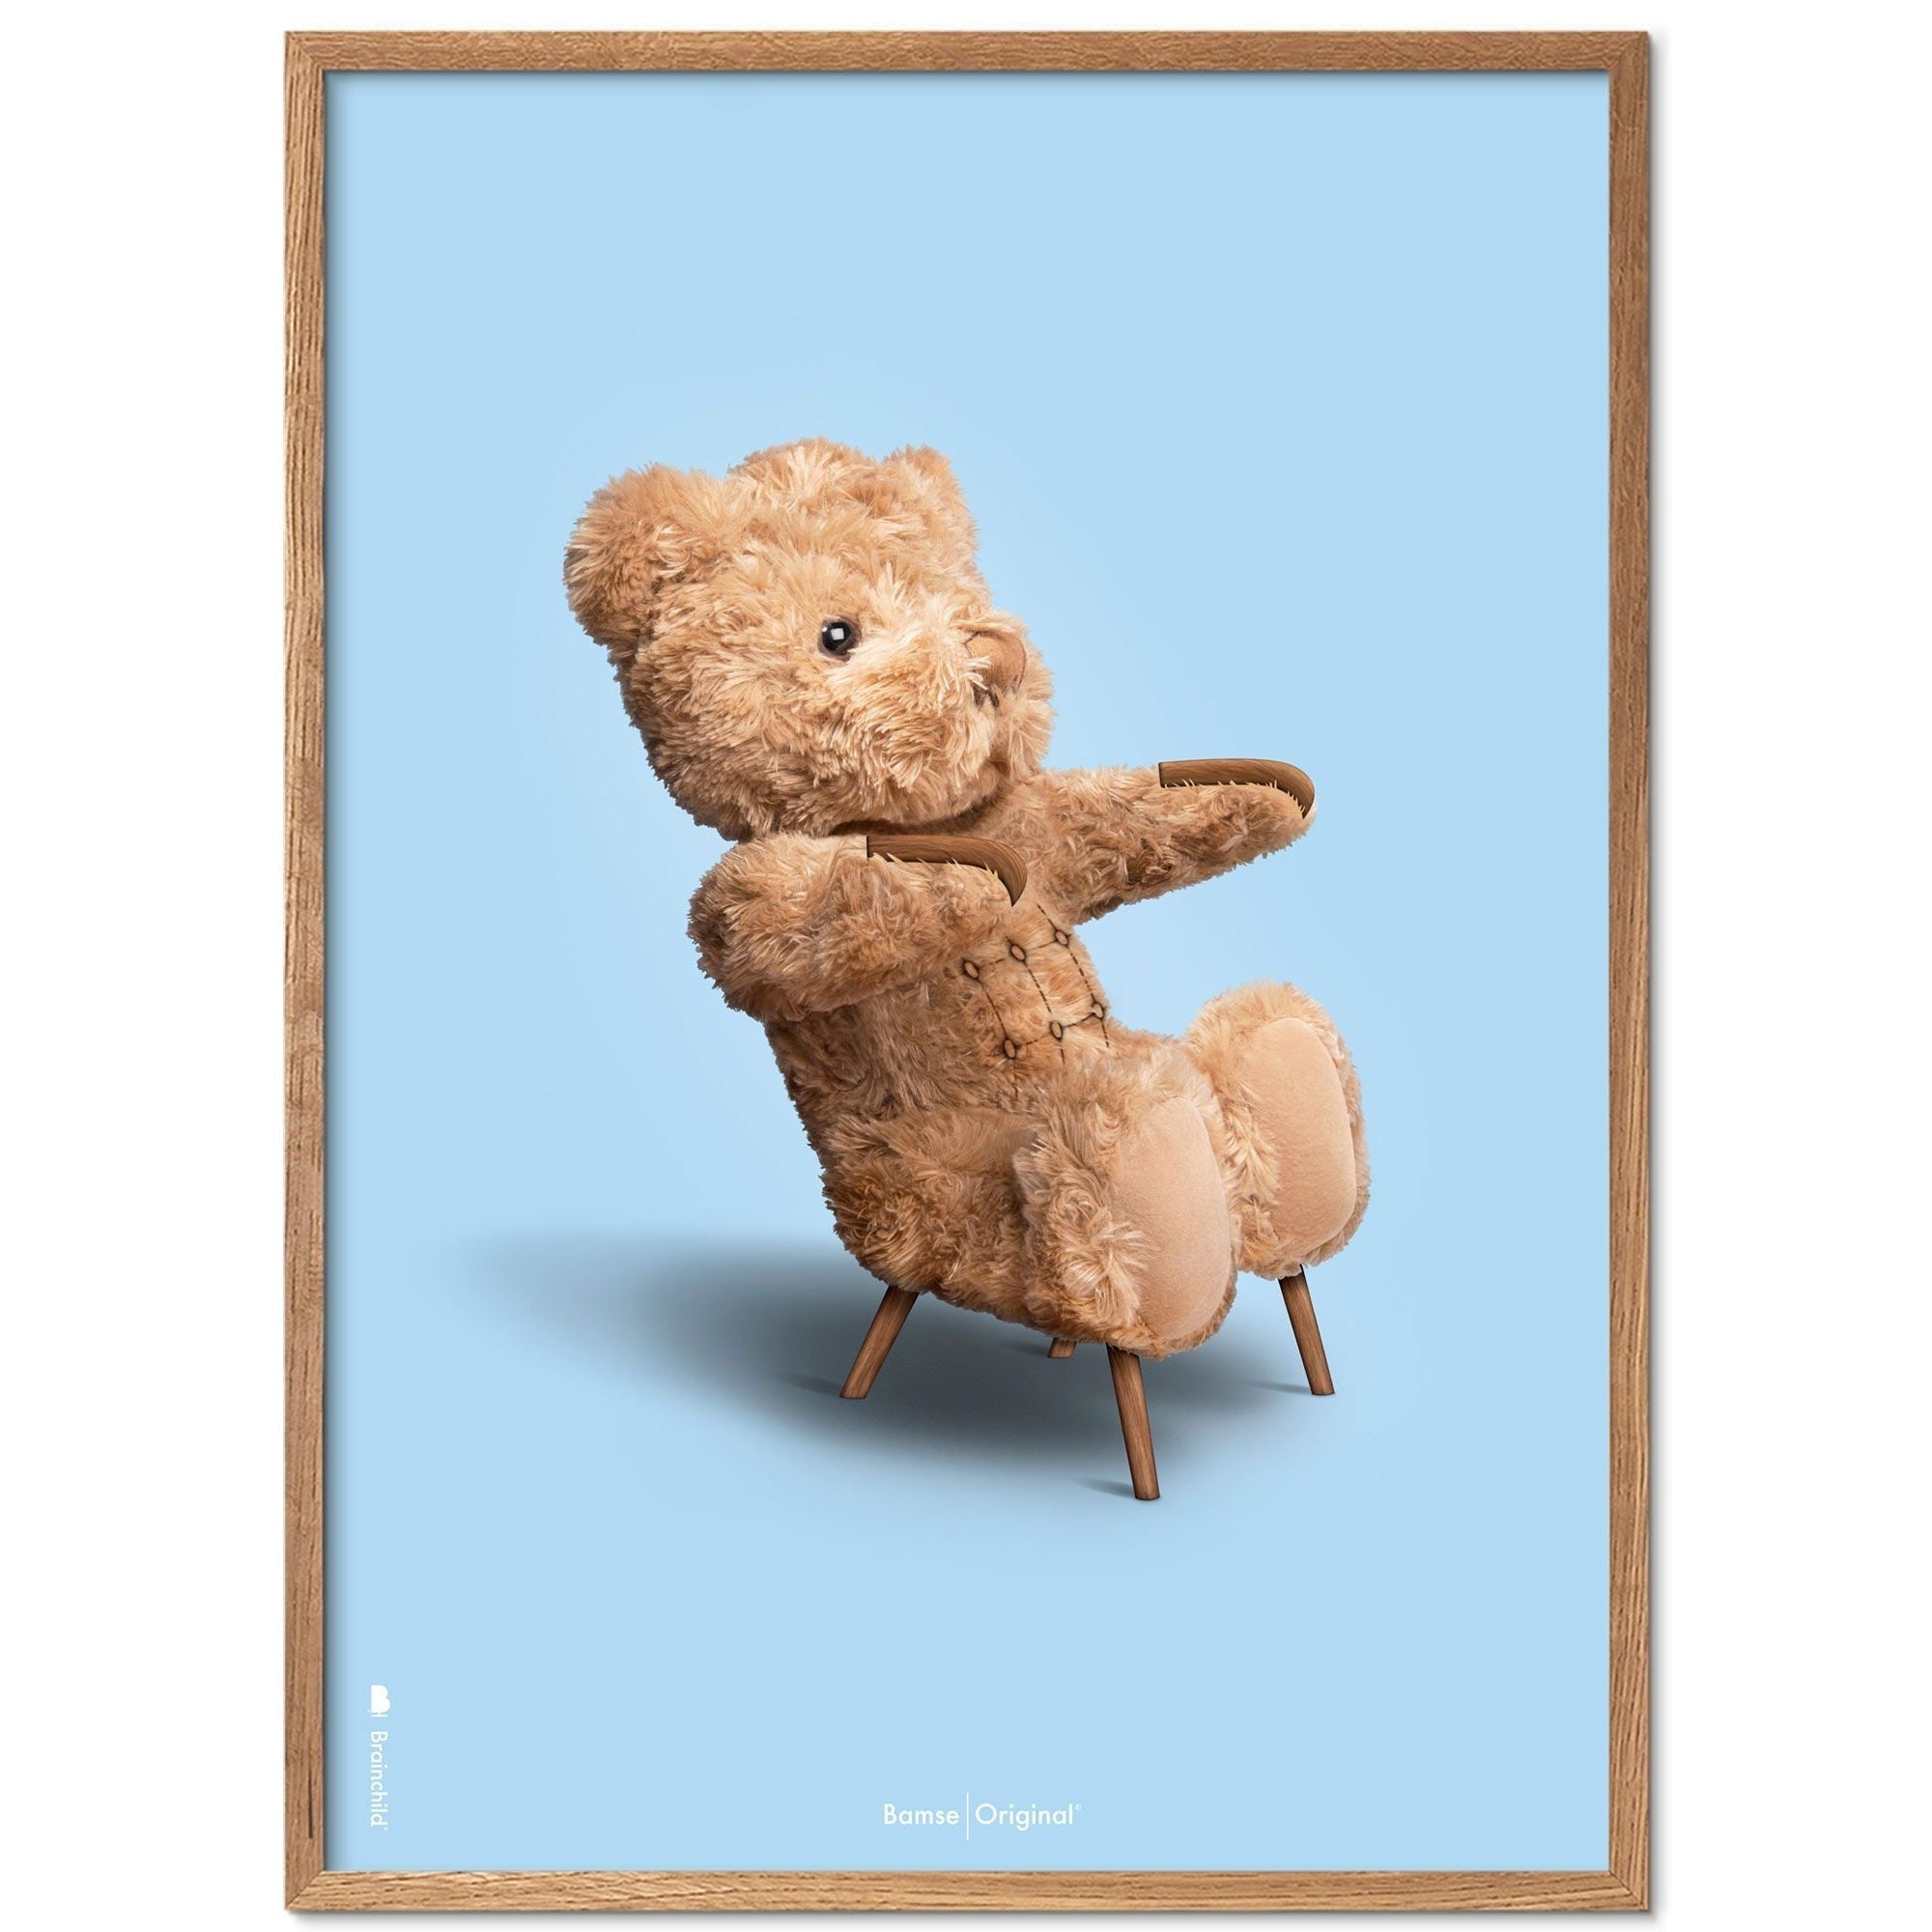 Marco de póster clásico de BrainChild Teddy Bear Hecho de rama de madera clara de 30x40 cm, fondo azul claro